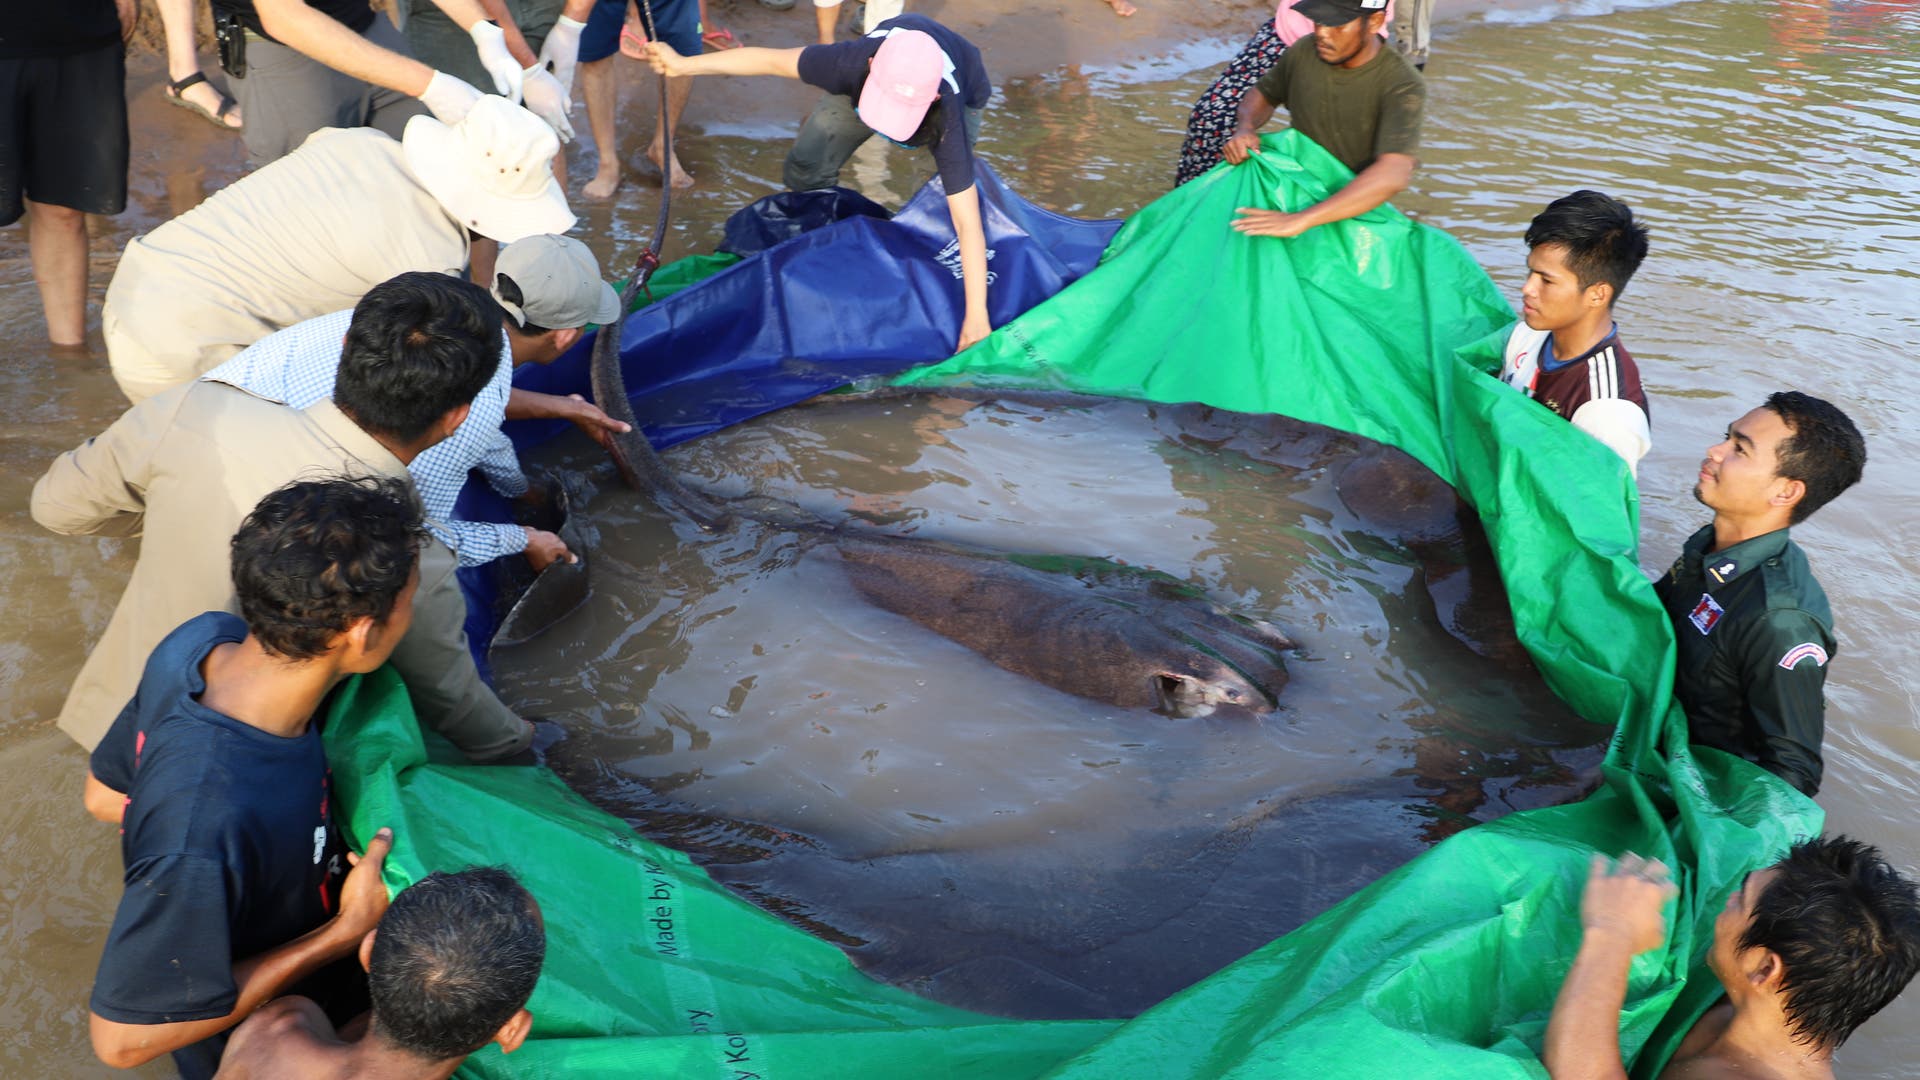 Beam record van de Mekong rivier: de grootste zoetwatervis ter wereld